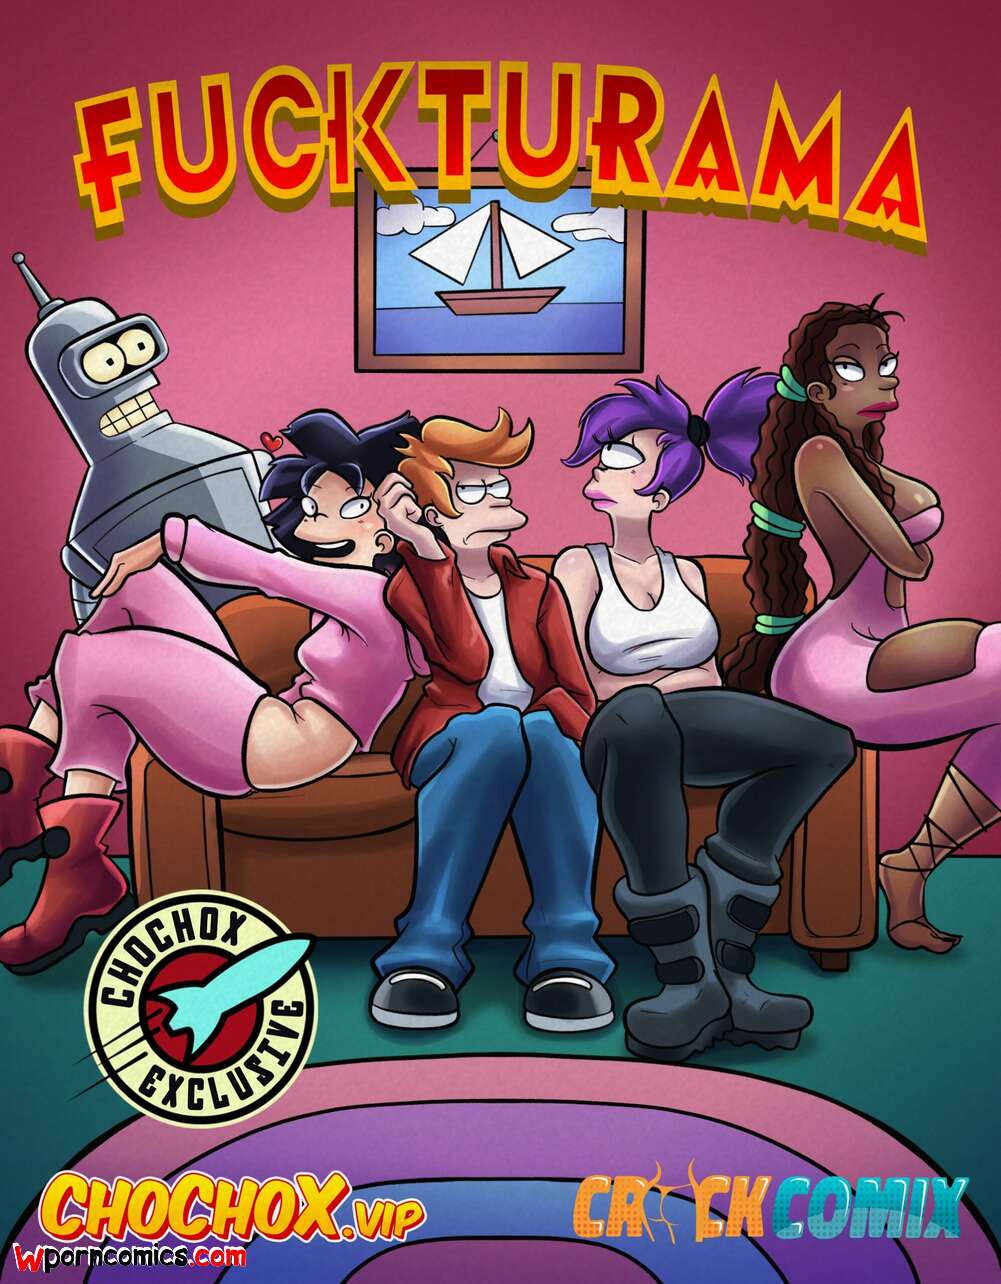 1001px x 1284px - âœ…ï¸ Porn comic Fuckturama. ChoChoX Sex comic guys from Futurama | Porn comics  in English for adults only | sexkomix2.com